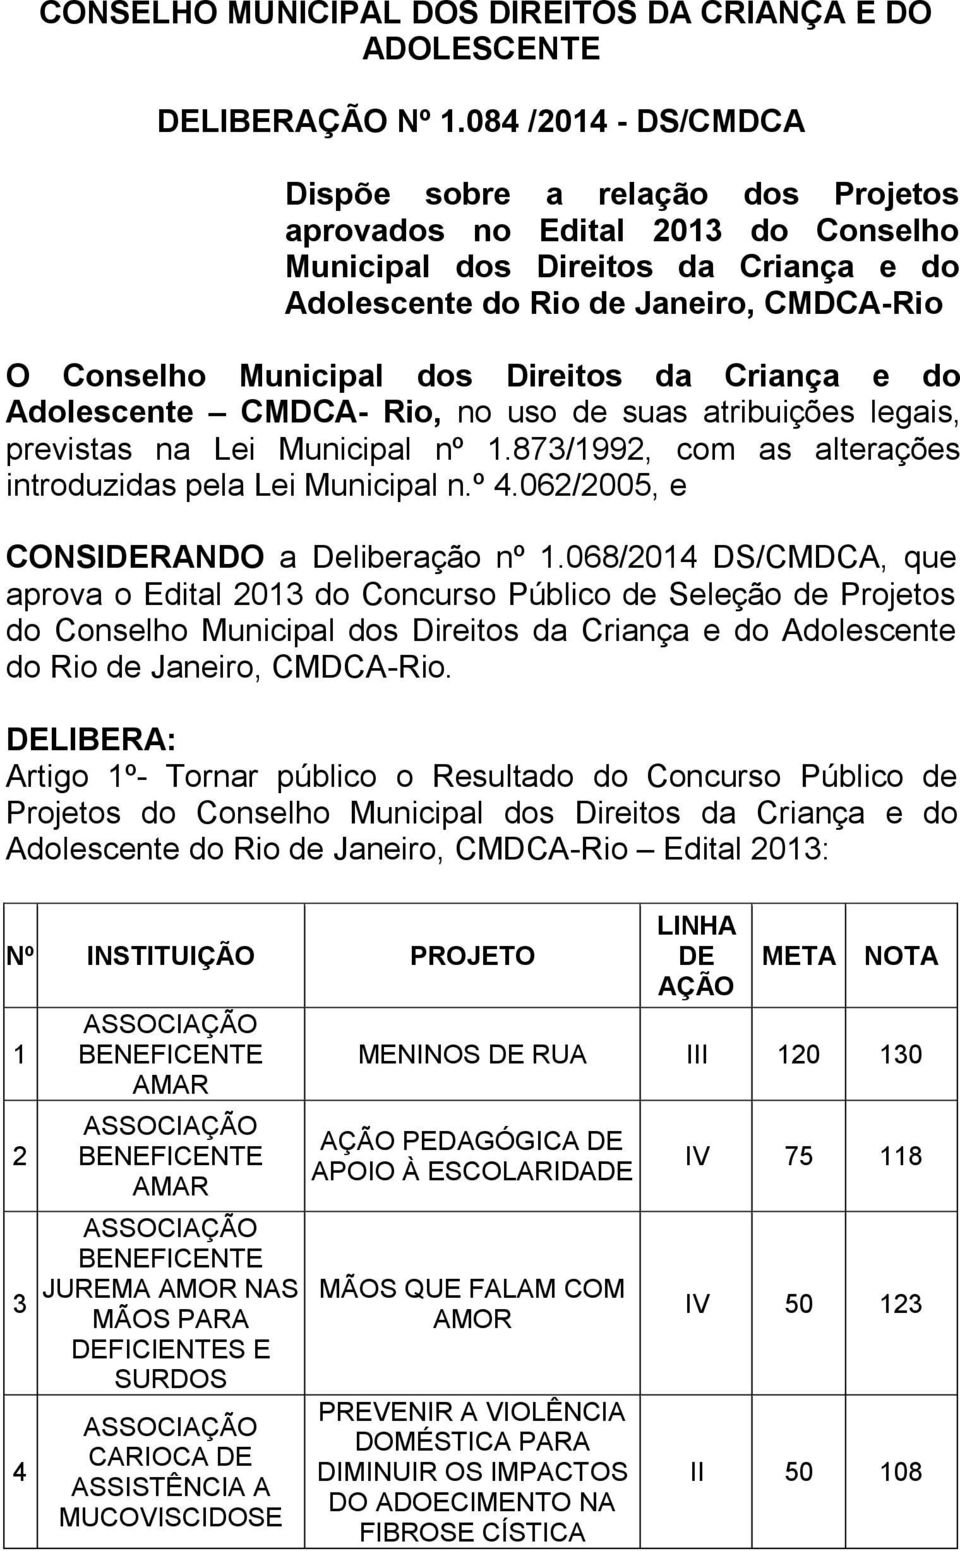 Direitos da Criança e do Adolescente CMDCA- Rio, no uso de suas atribuições legais, previstas na Lei Municipal nº 1.873/1992, com as alterações introduzidas pela Lei Municipal n.º 4.